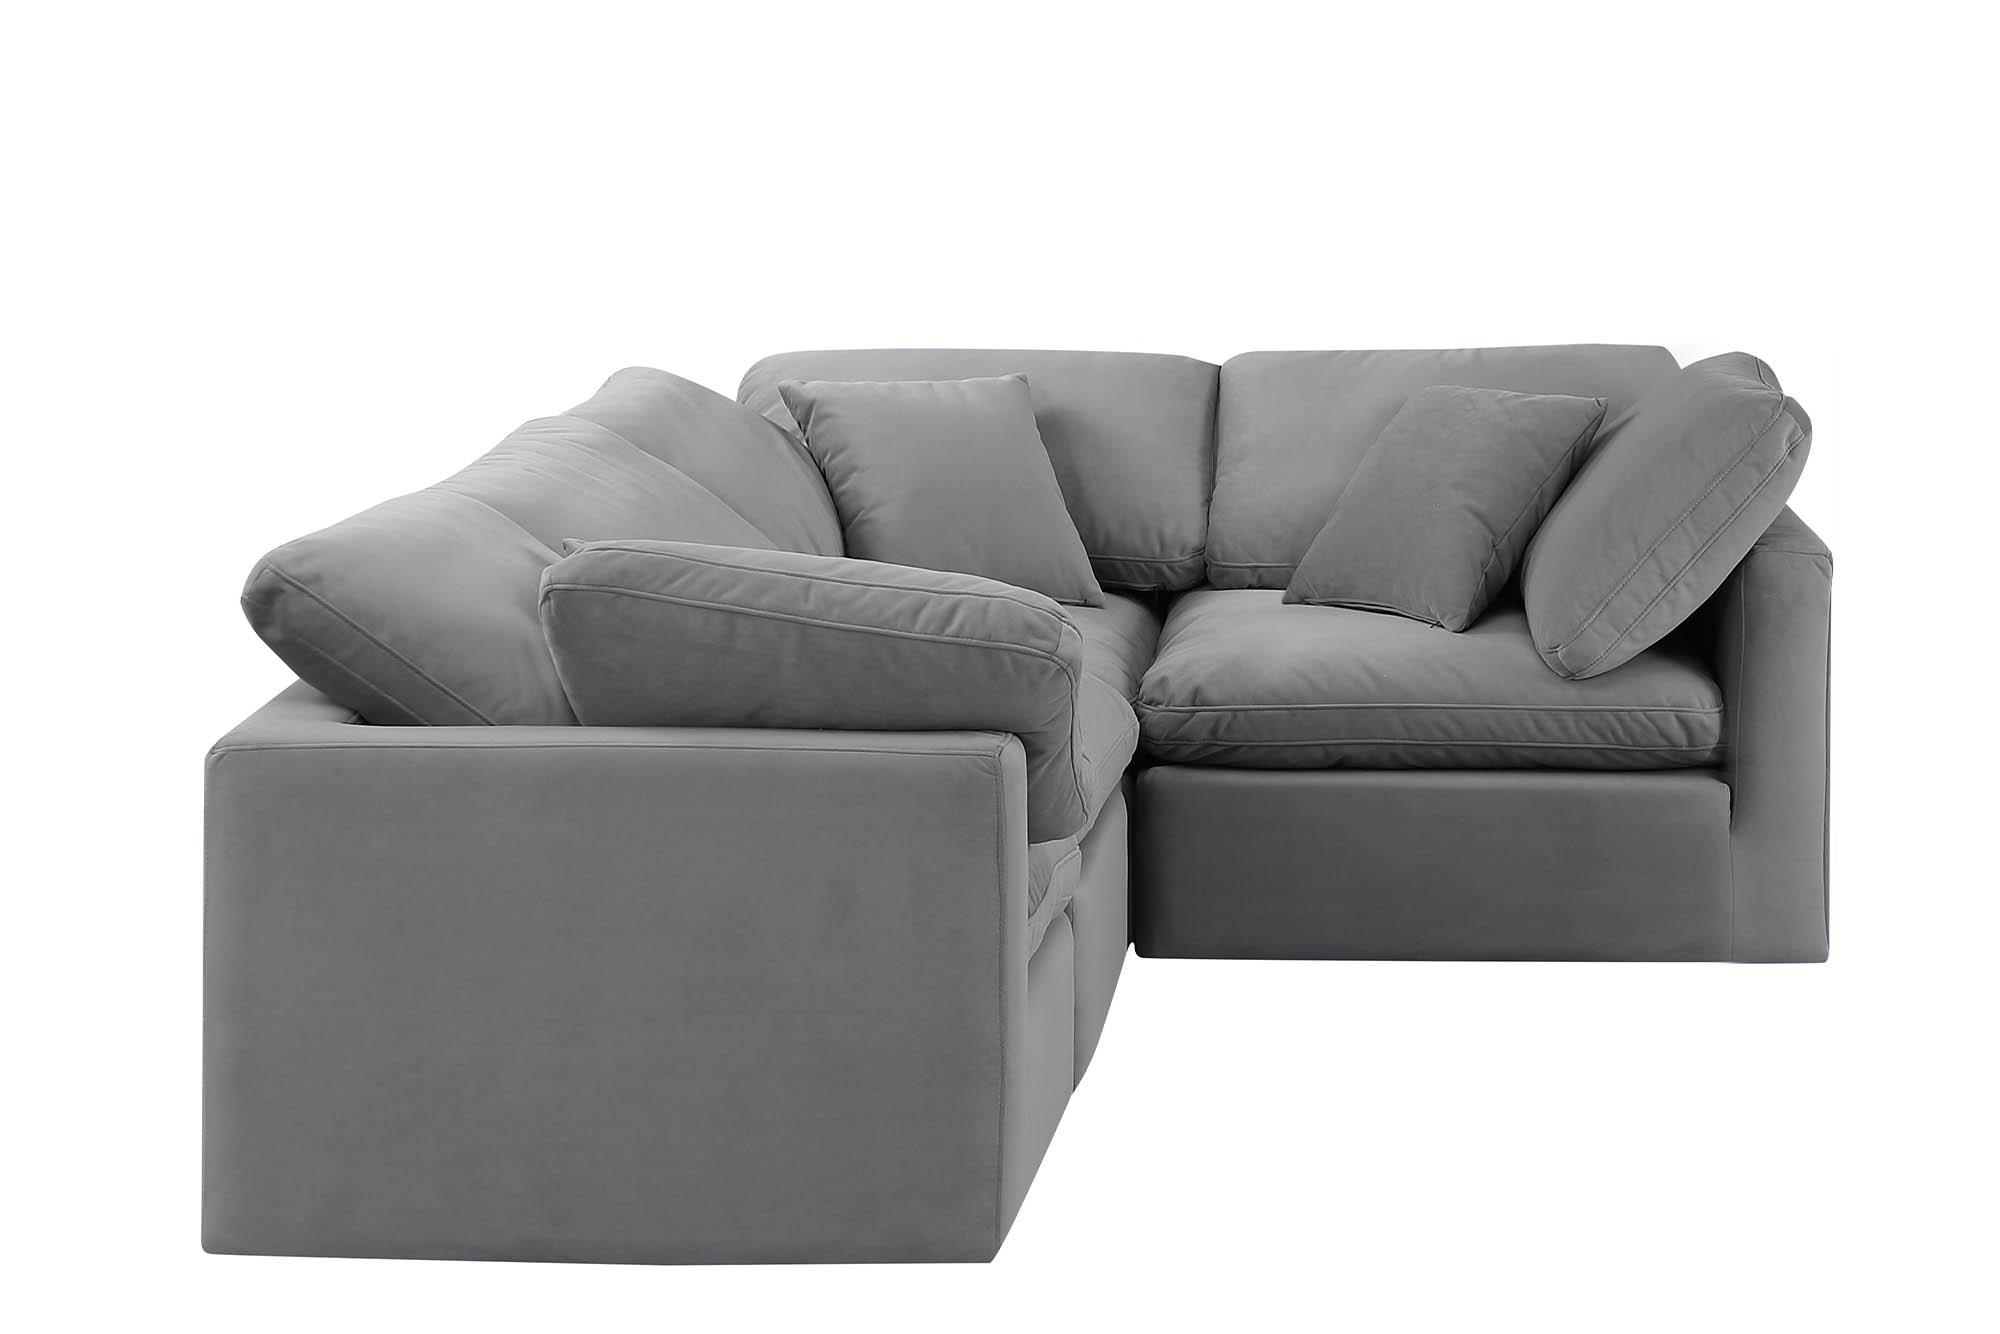 

    
Meridian Furniture INDULGE 147Grey-Sec4C Modular Sectional Sofa Gray 147Grey-Sec4C
